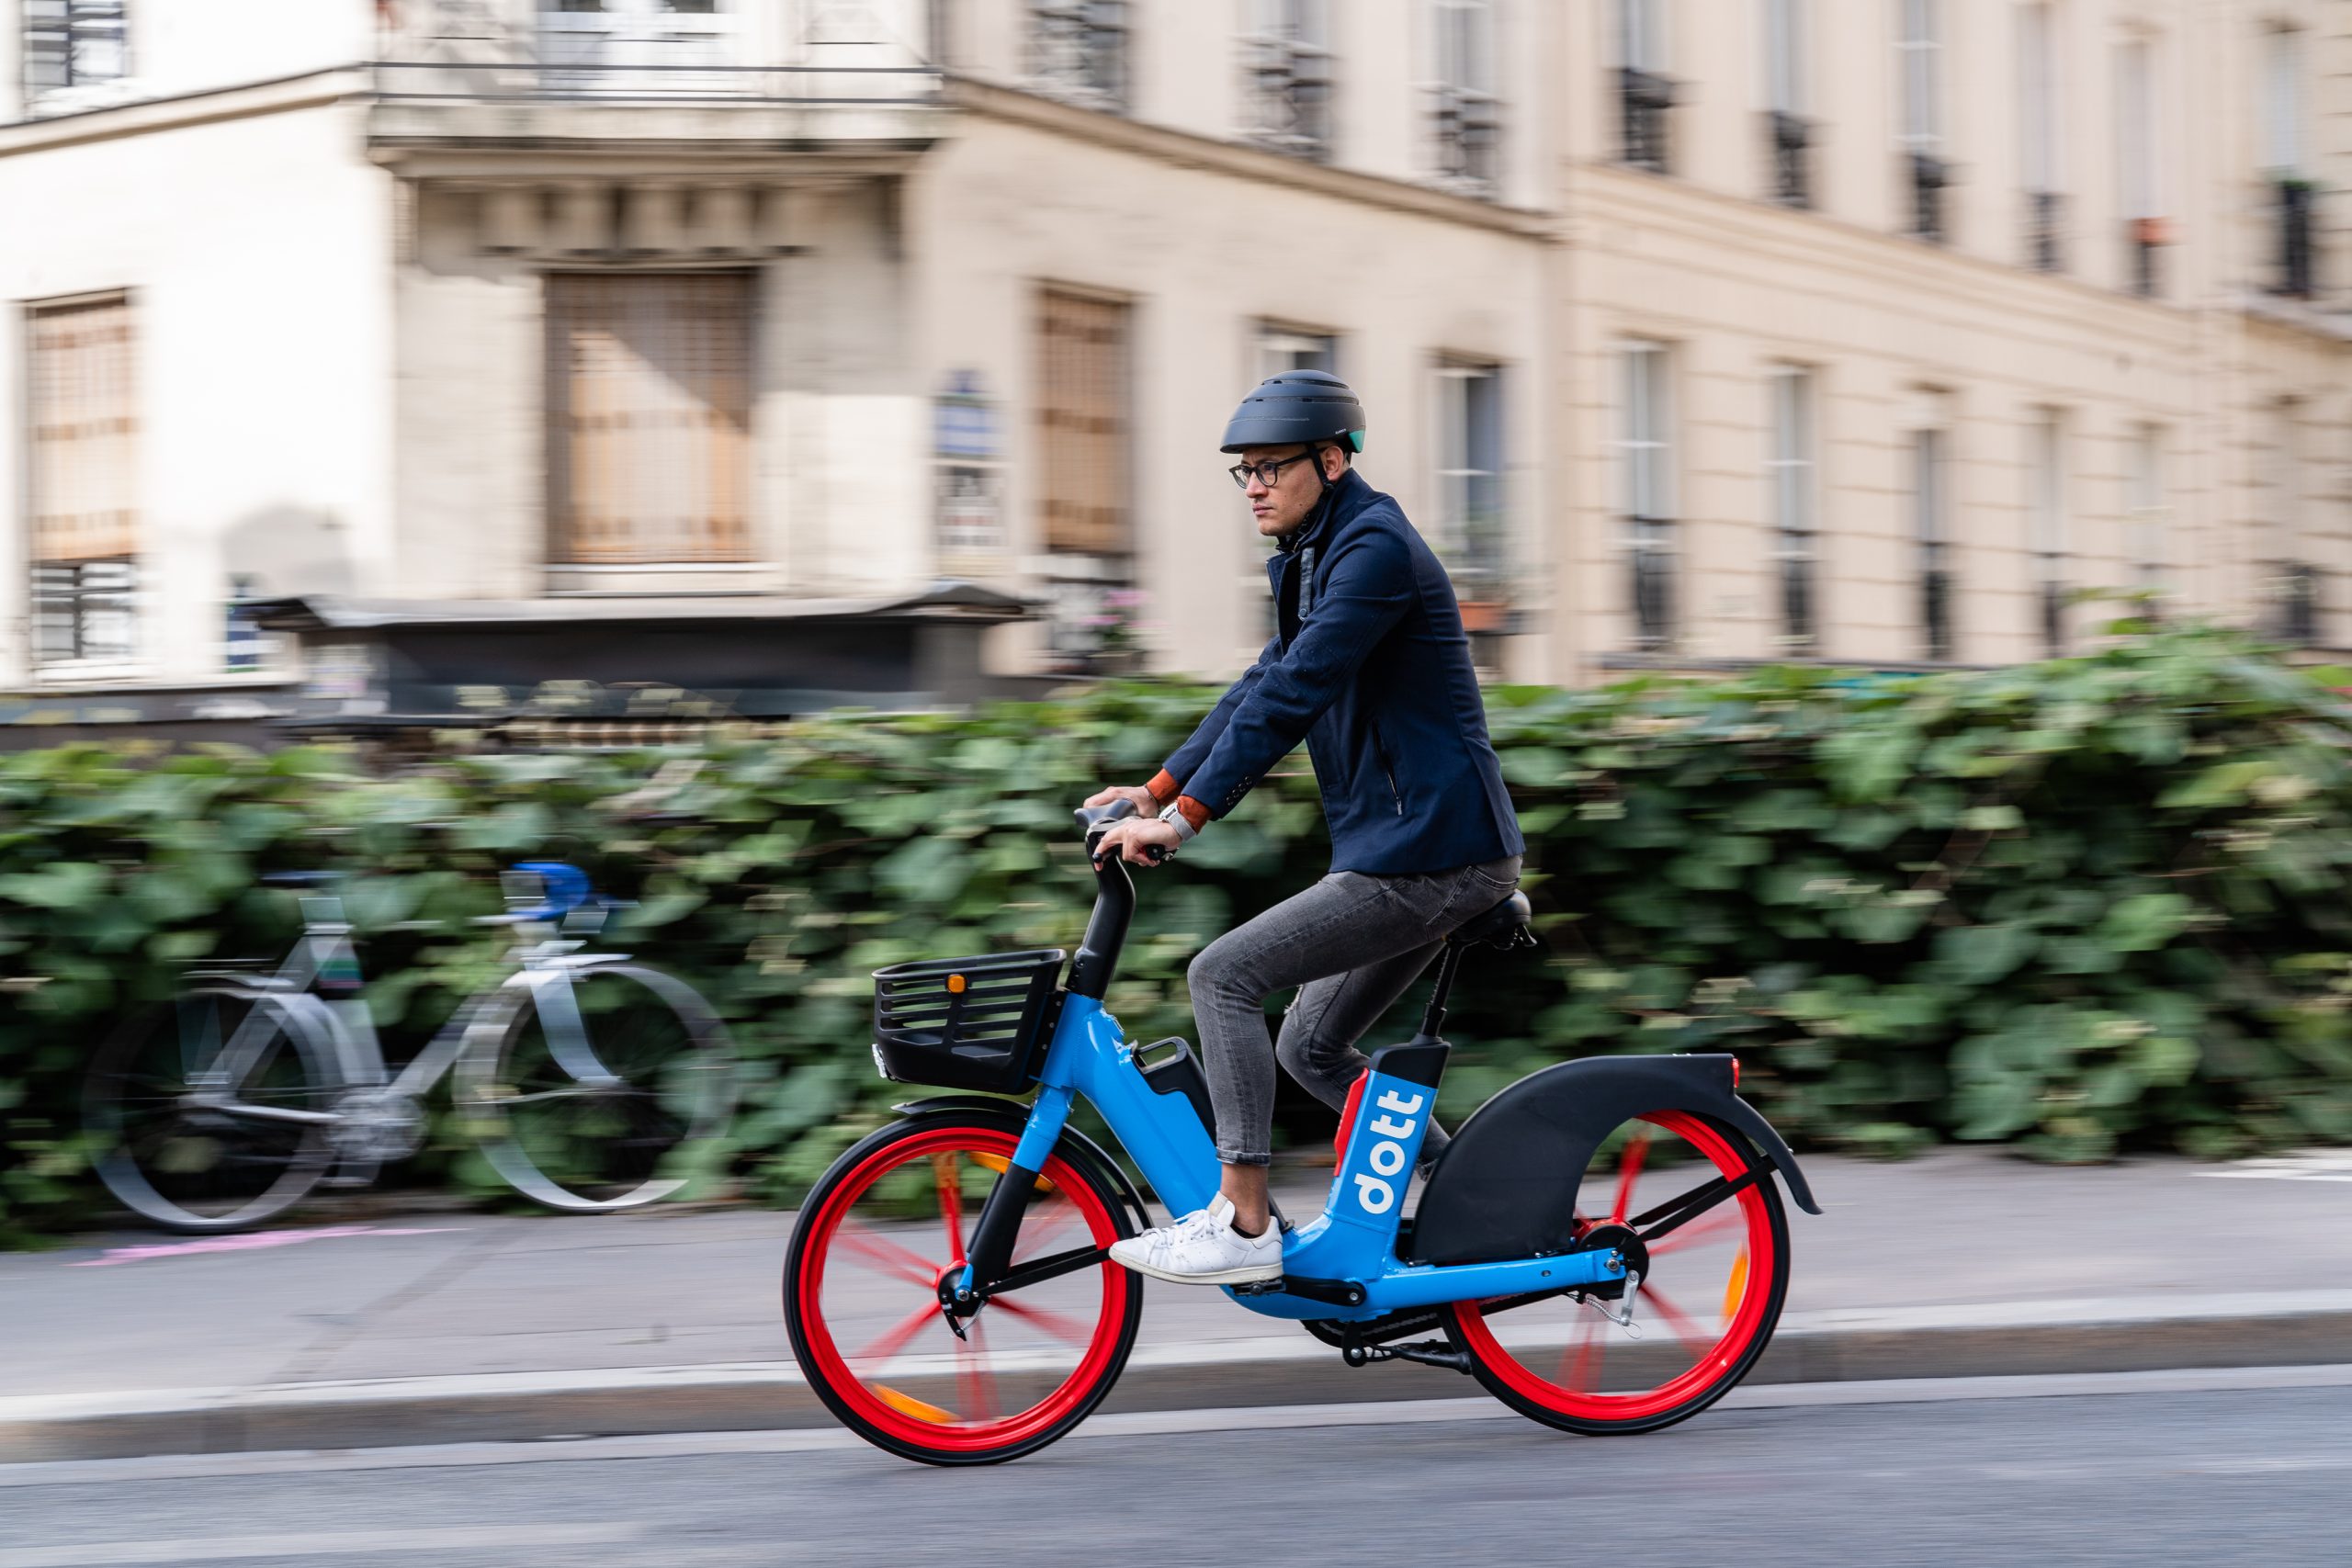 Dott, Lime secure shared e-bike tender in Marseille